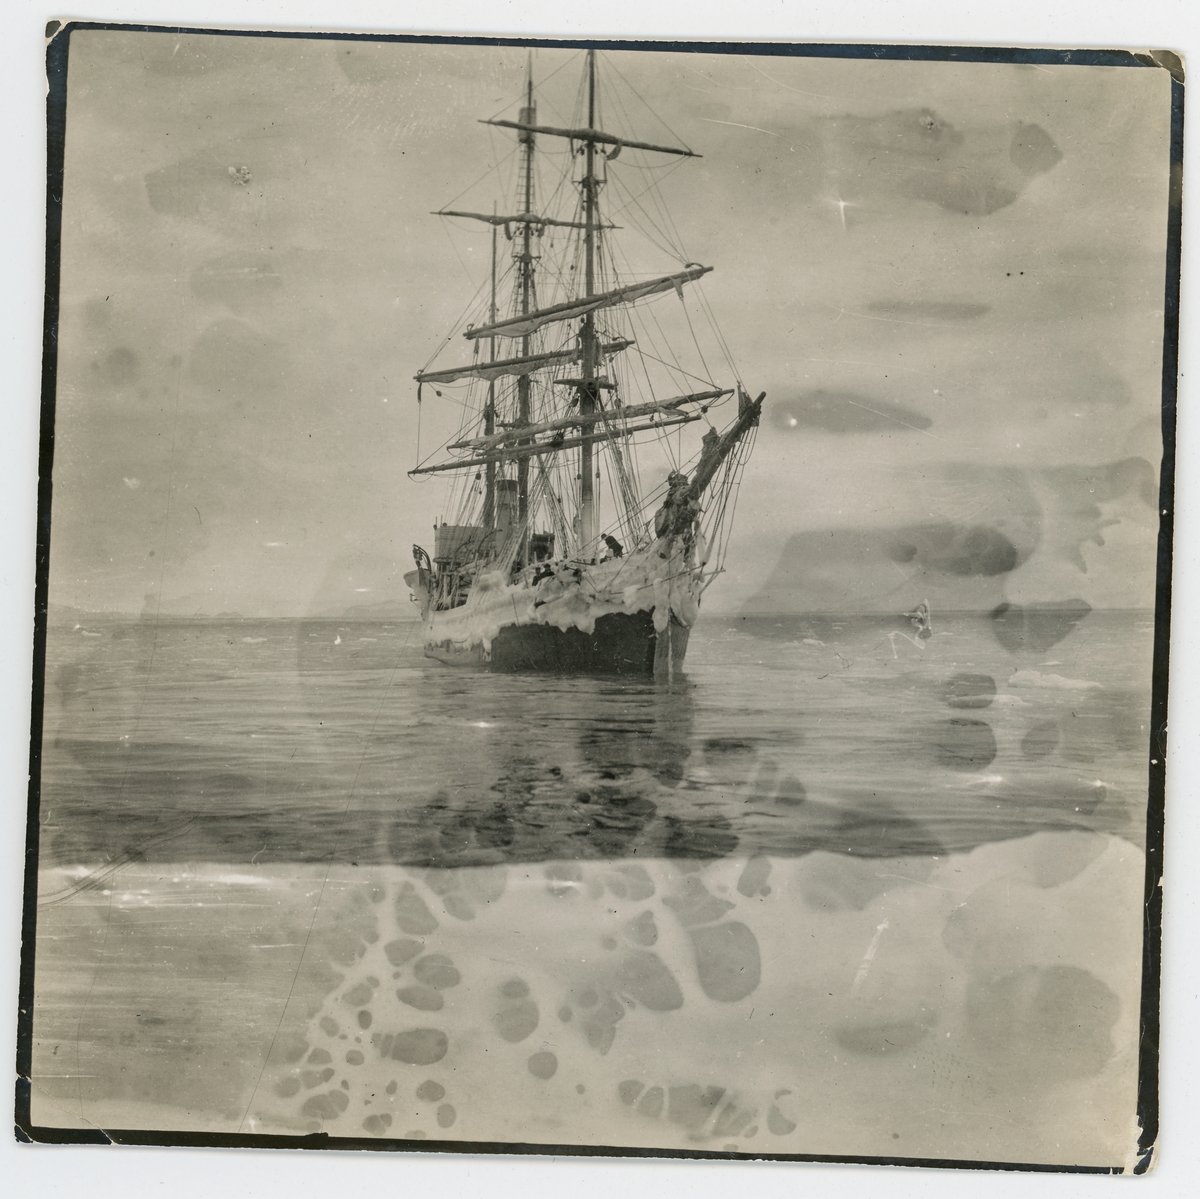 Antarktiska undsättningsexpeditionens fartyg FRITHJOF vid Admiralty Inlet, Amiralitetssundet, 4 december 1903. Påskrift på originalets baksida: "Vid iskanten".